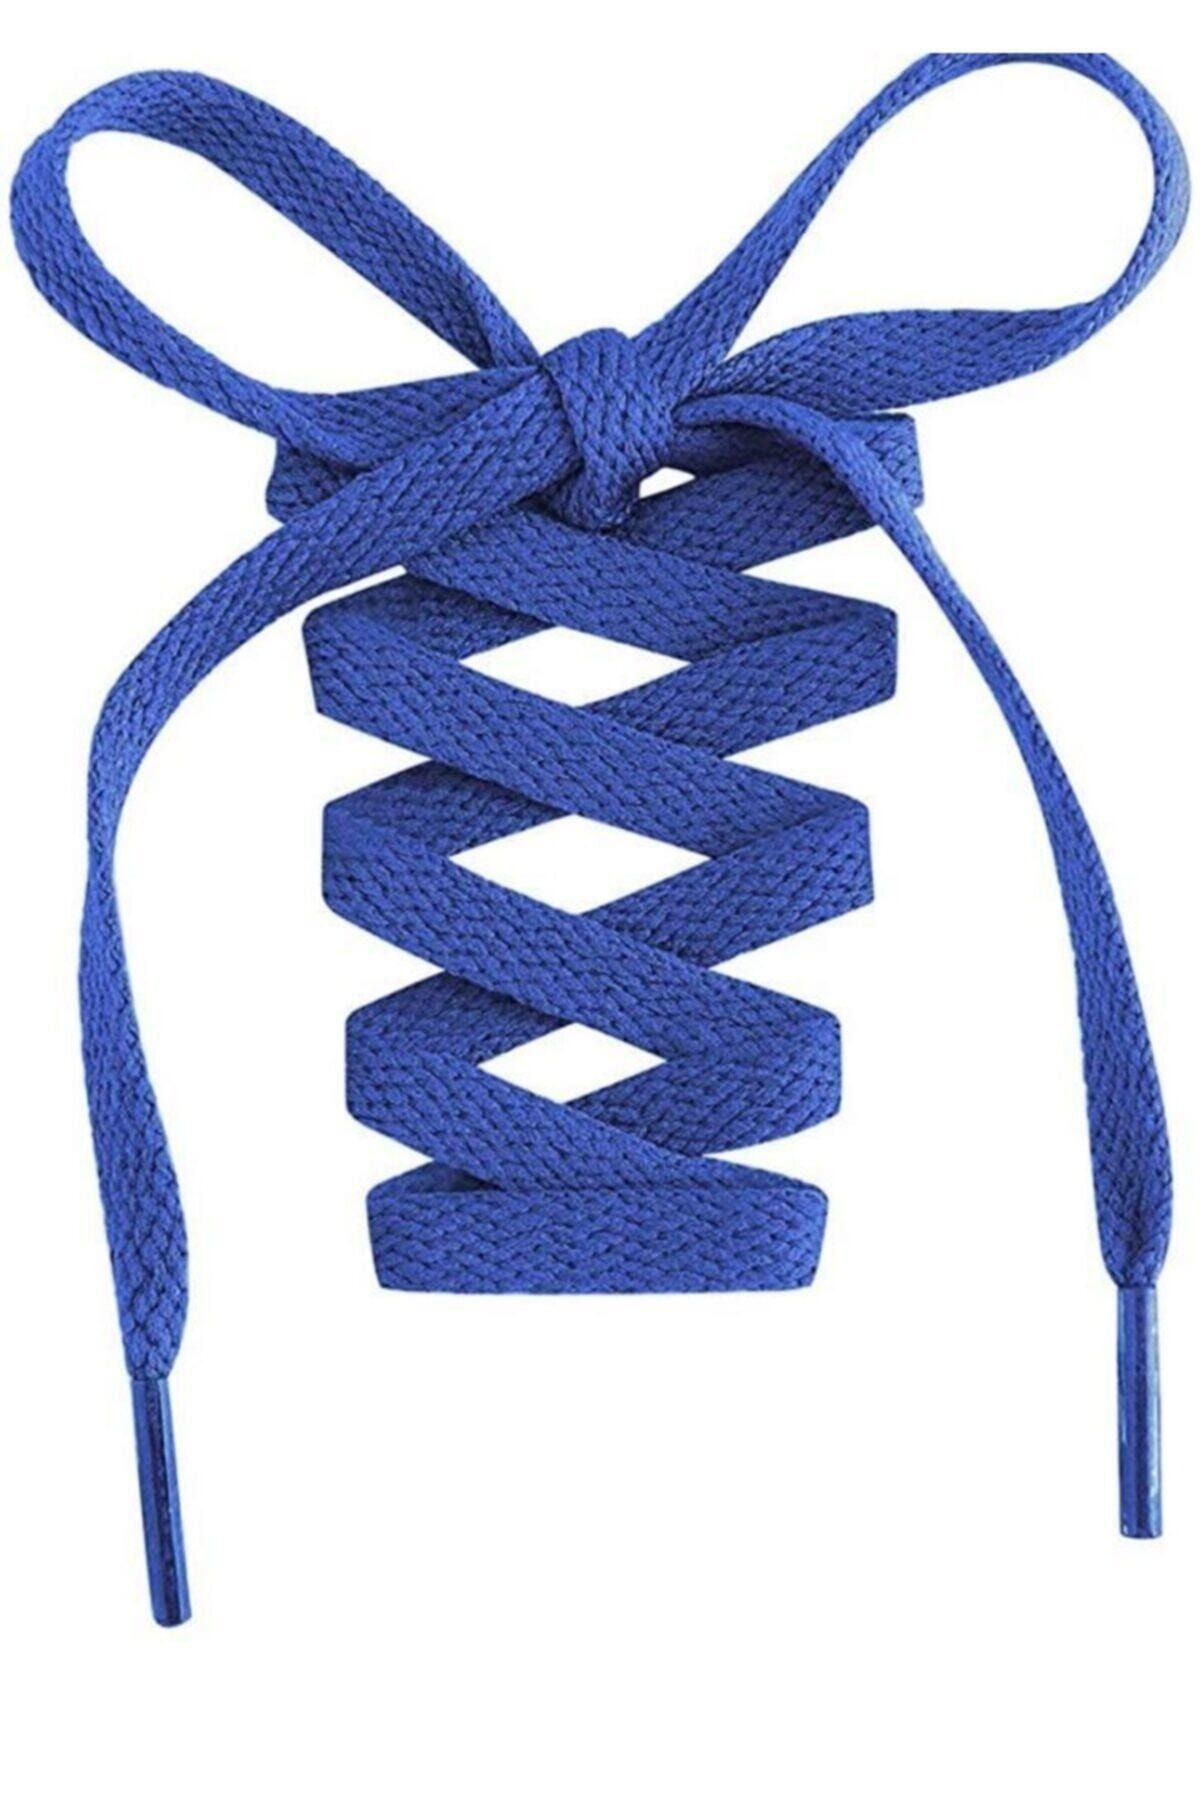 AYAKKABICIM EST Unisex Mavi Ayakkabı Bağcığı 120 cm